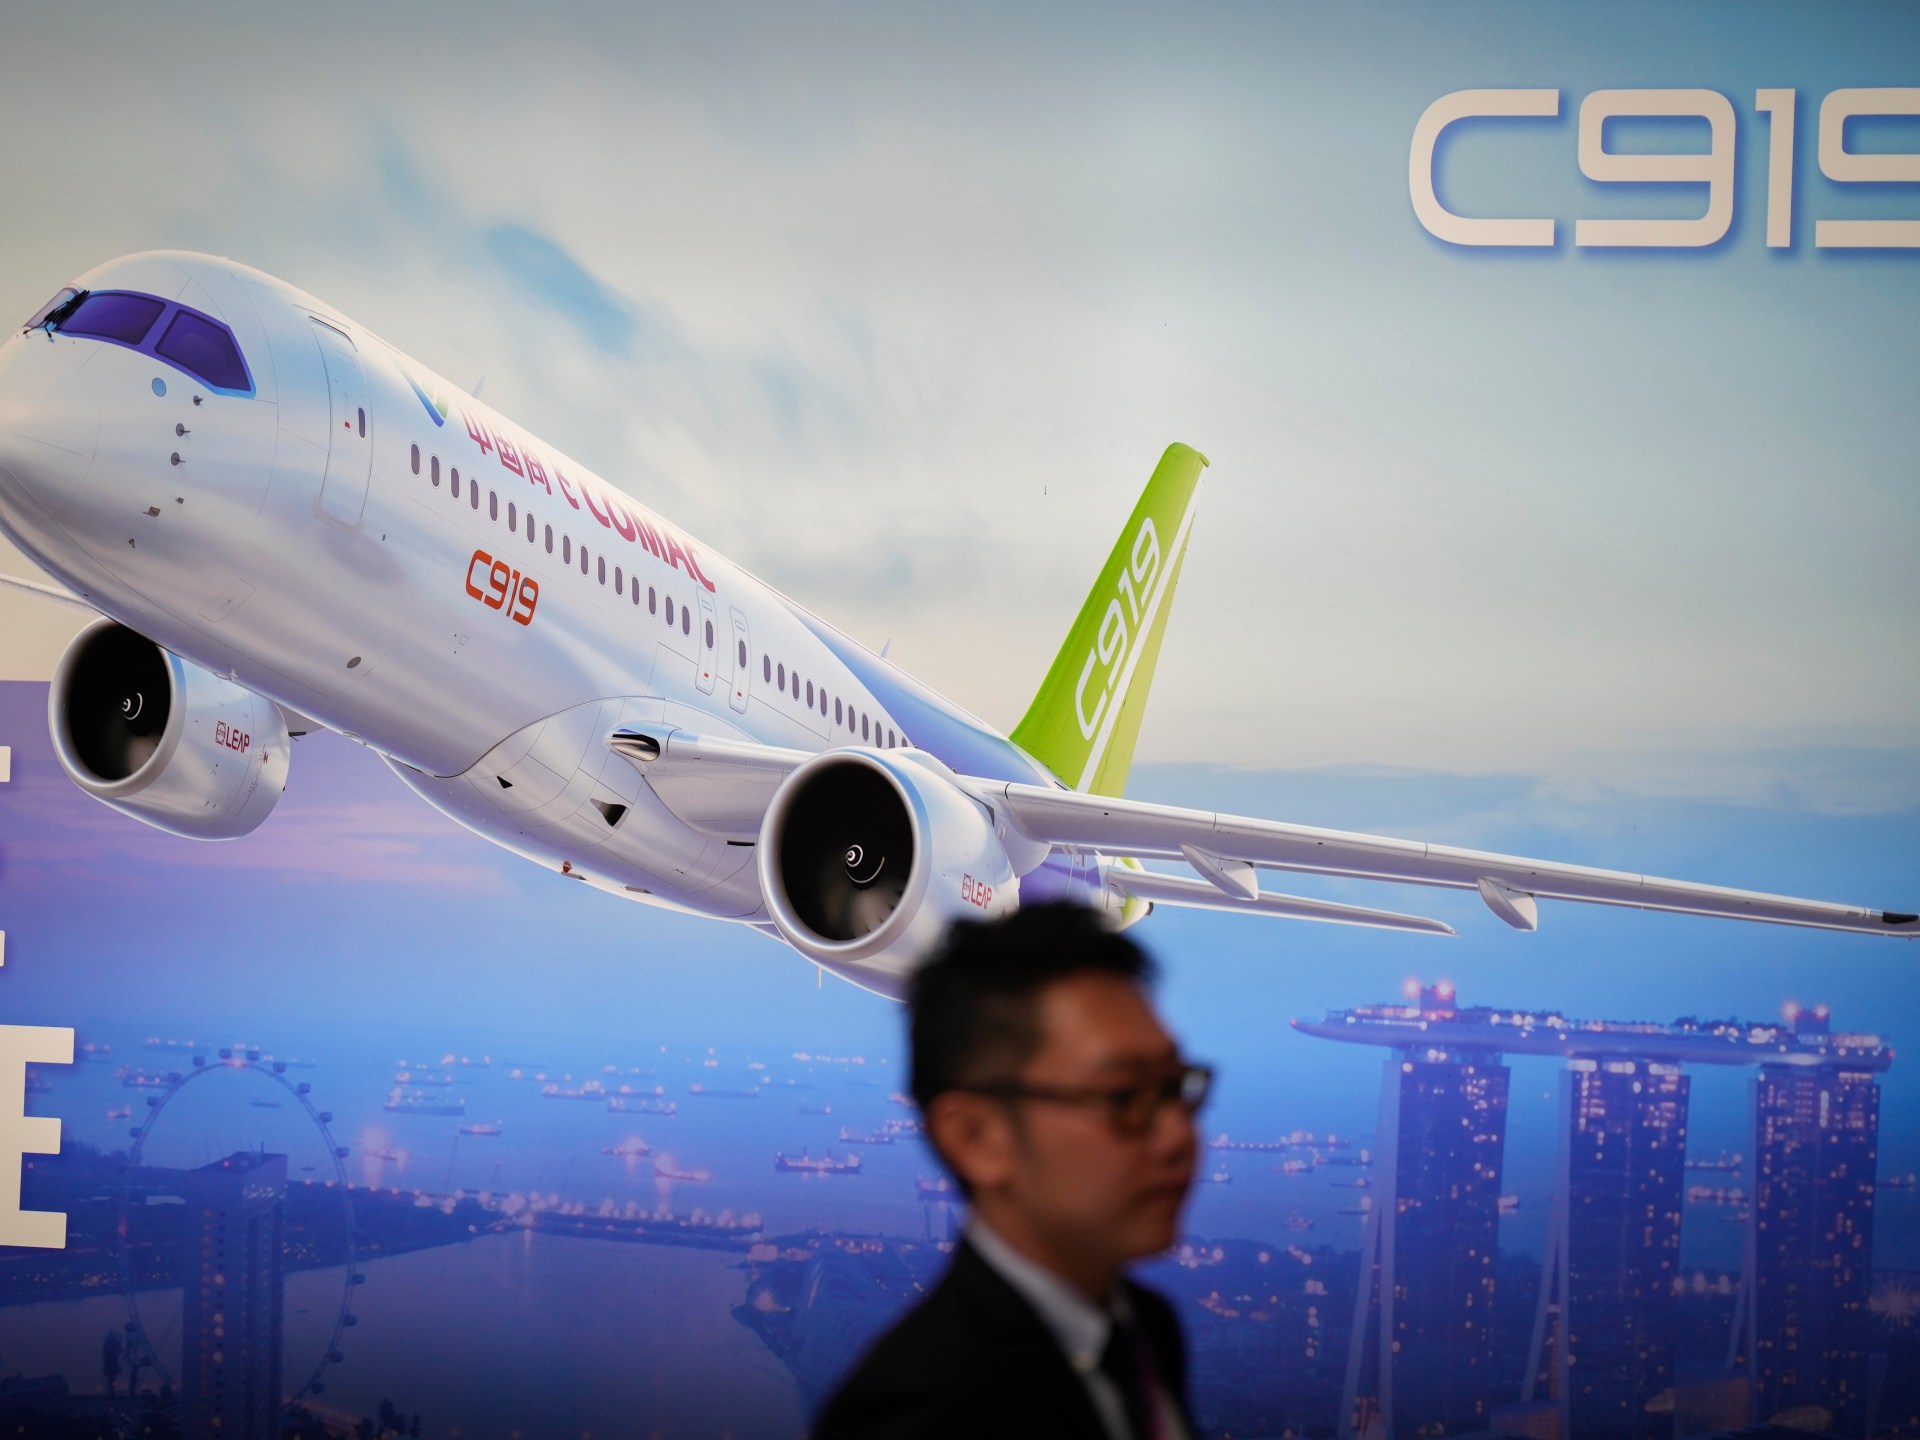 China’s C919 jetliner showcased at Singapore Airshow | Aviation